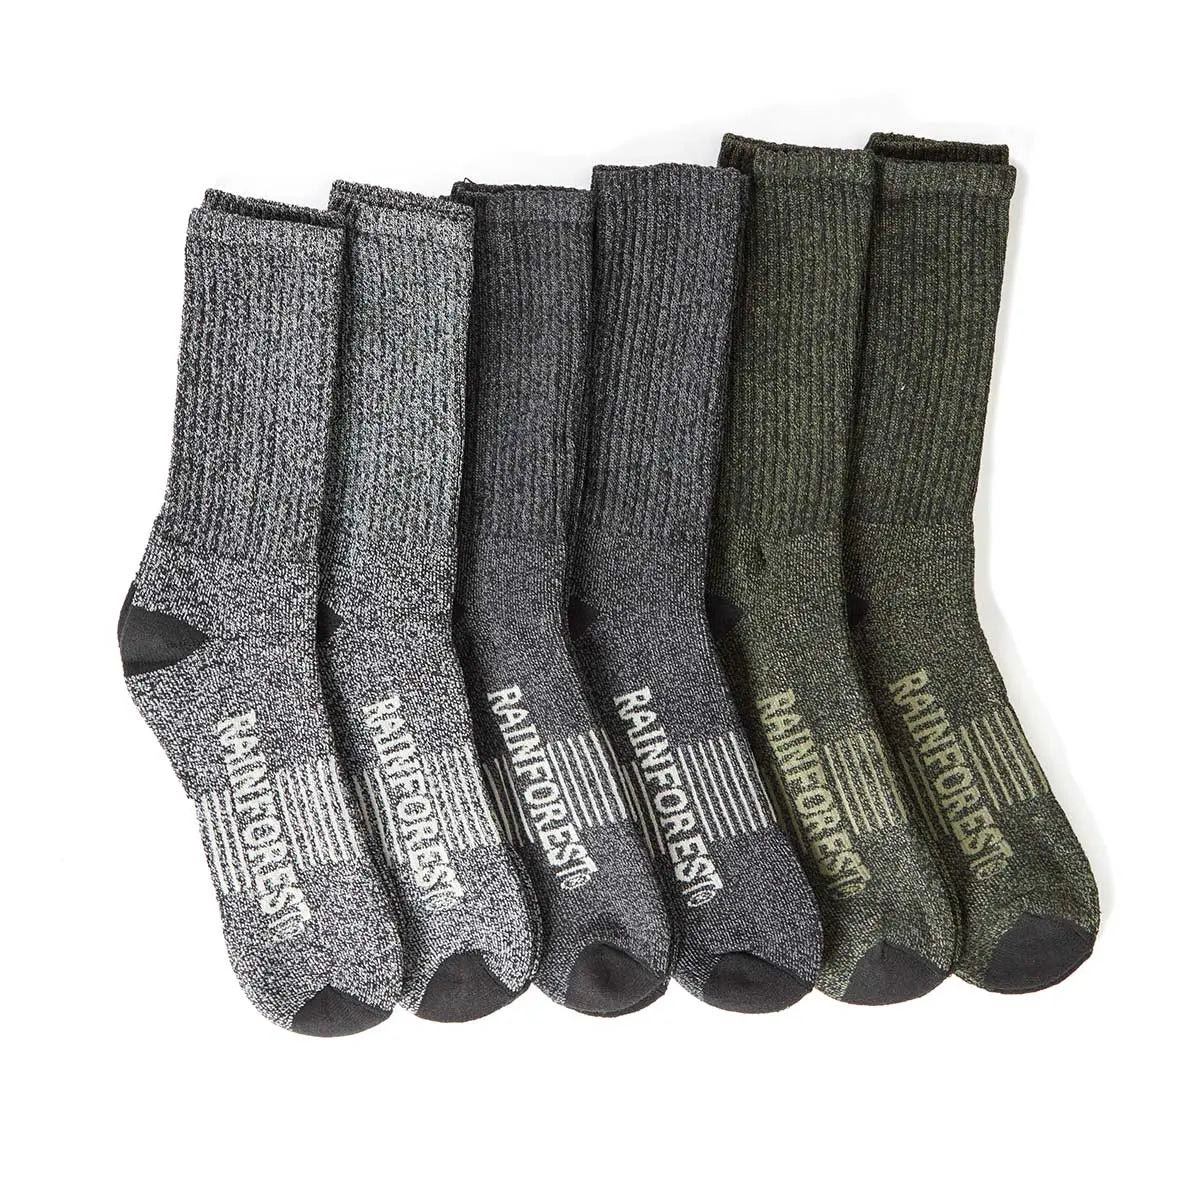 Rainforest Unisex 6 pack Outdoor Crew Sock for $7.75+FS!